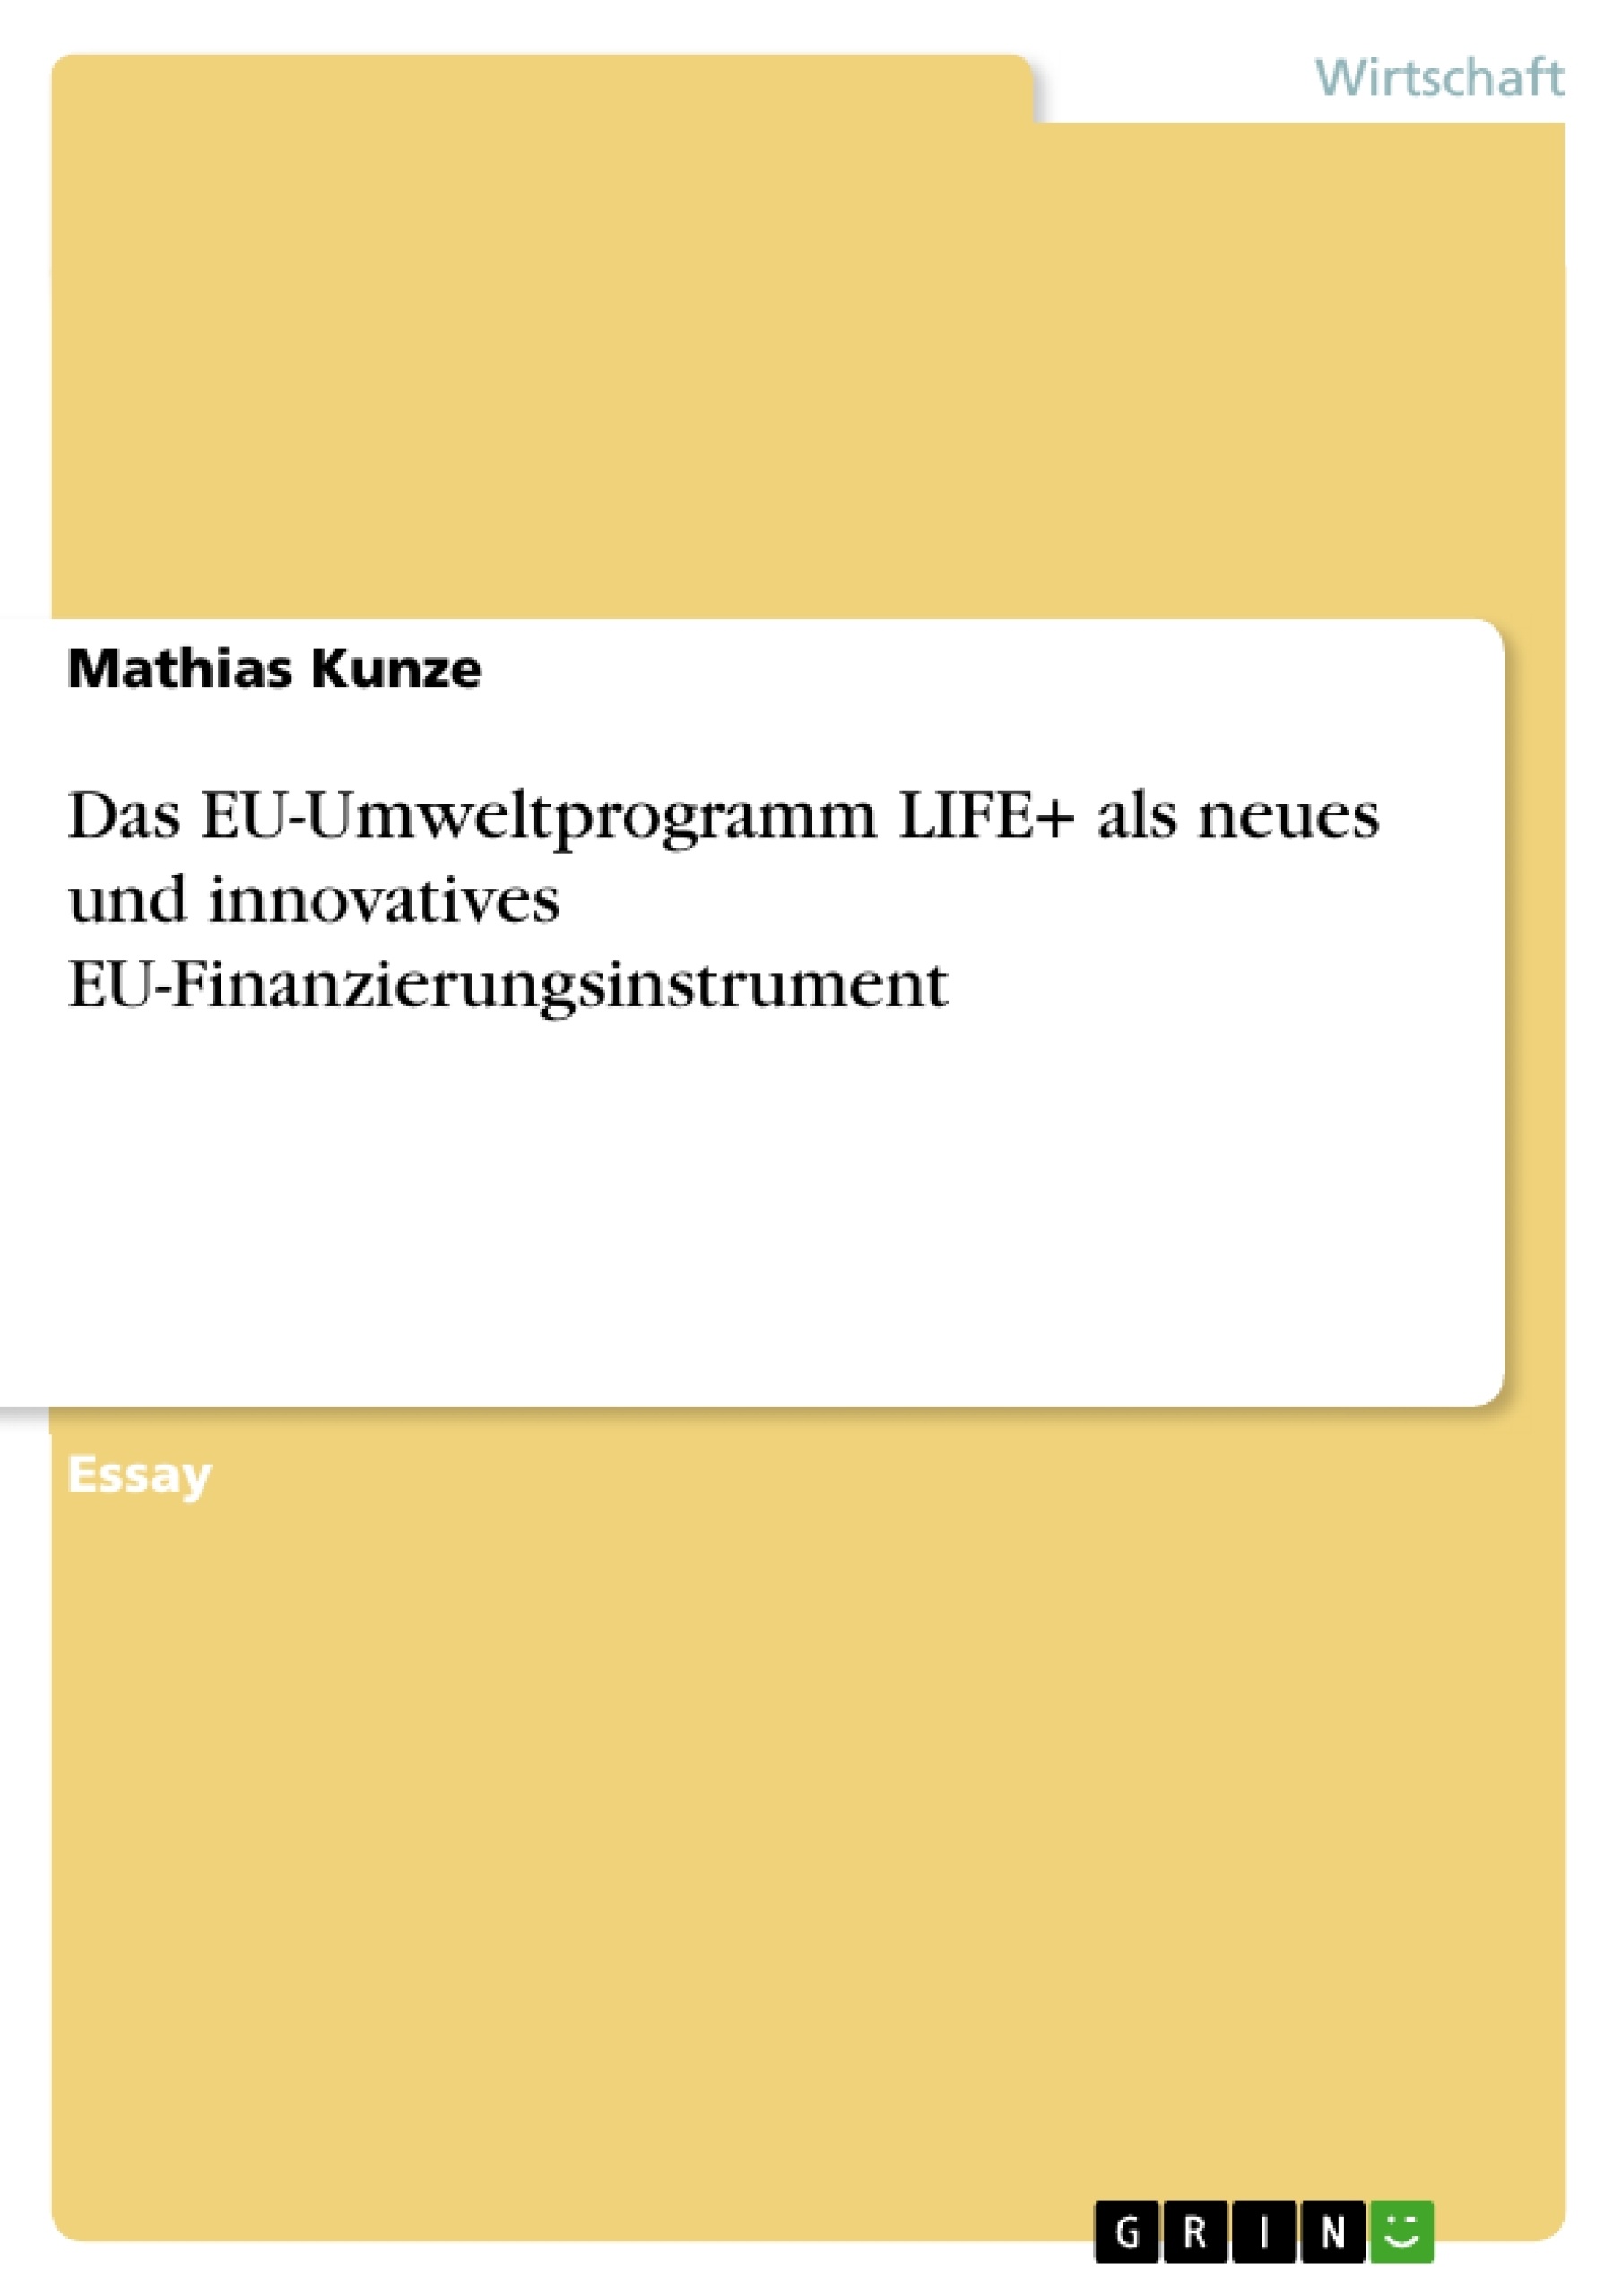 Título: Das EU-Umweltprogramm LIFE+ als neues und innovatives EU-Finanzierungsinstrument